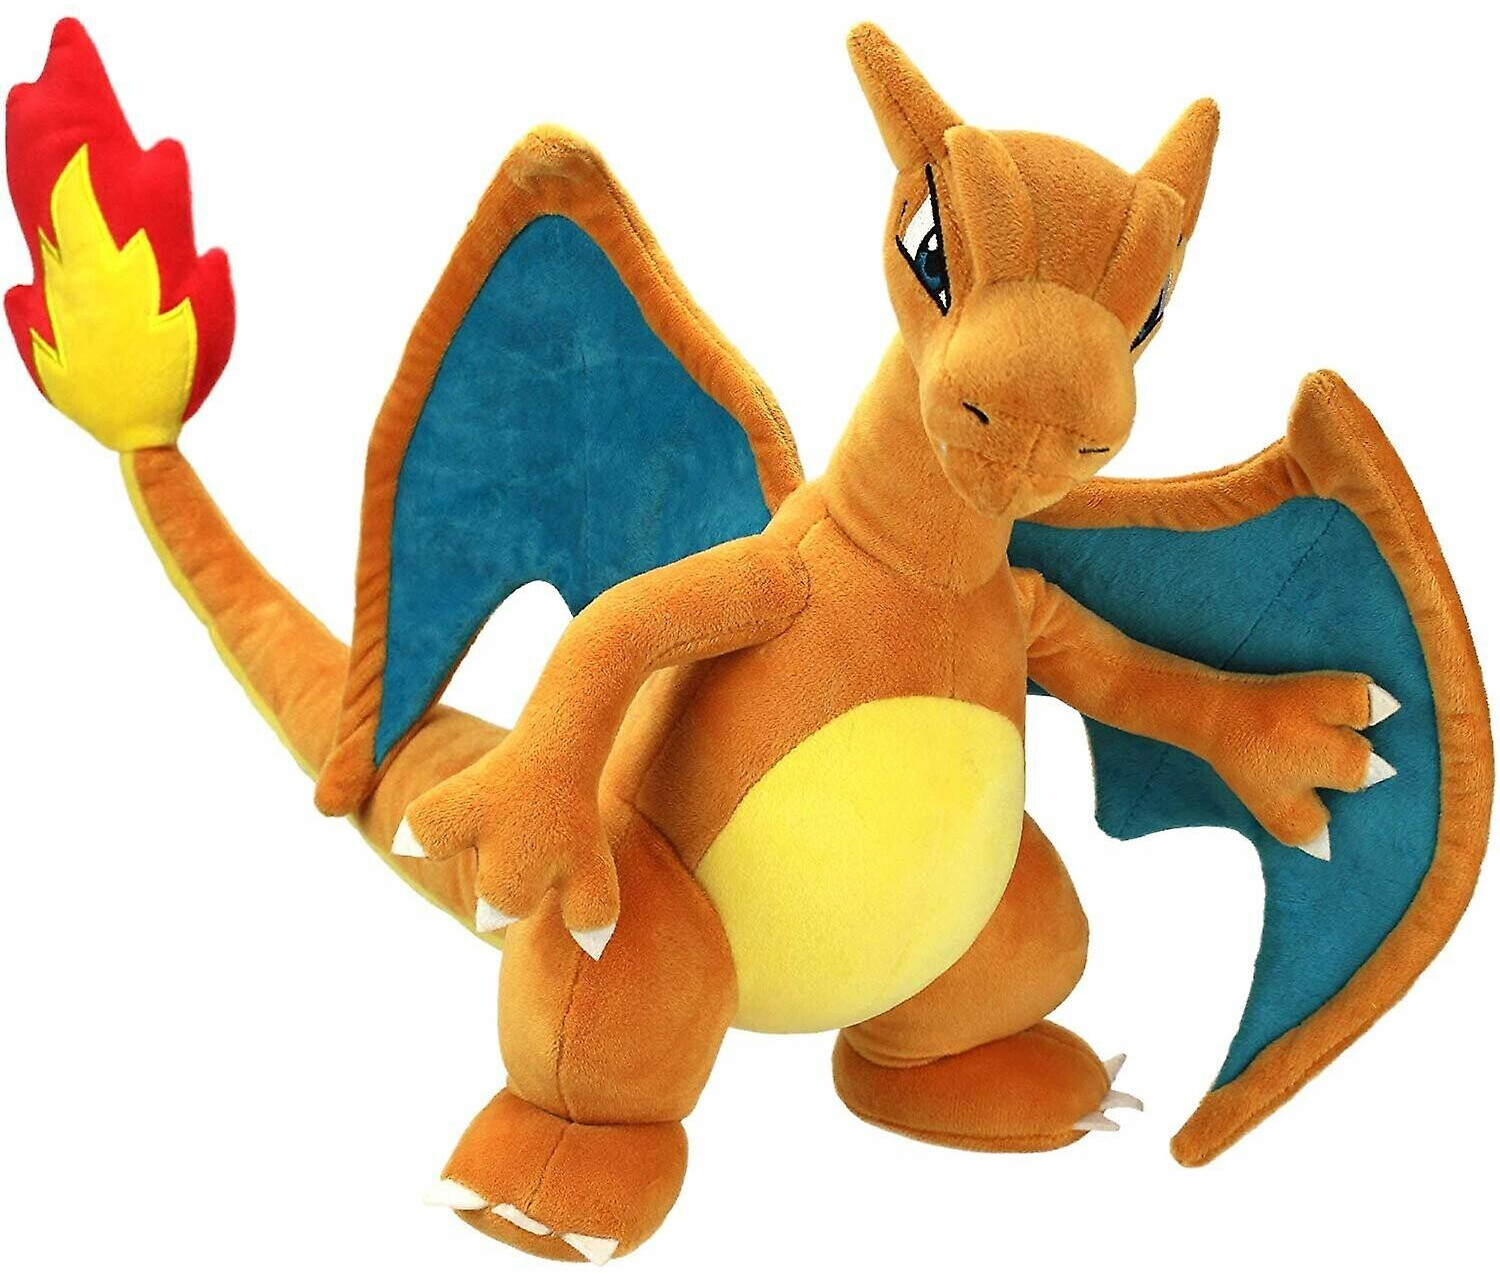 Boti Pokémon - Dracaufeu 30 cm au meilleur prix sur